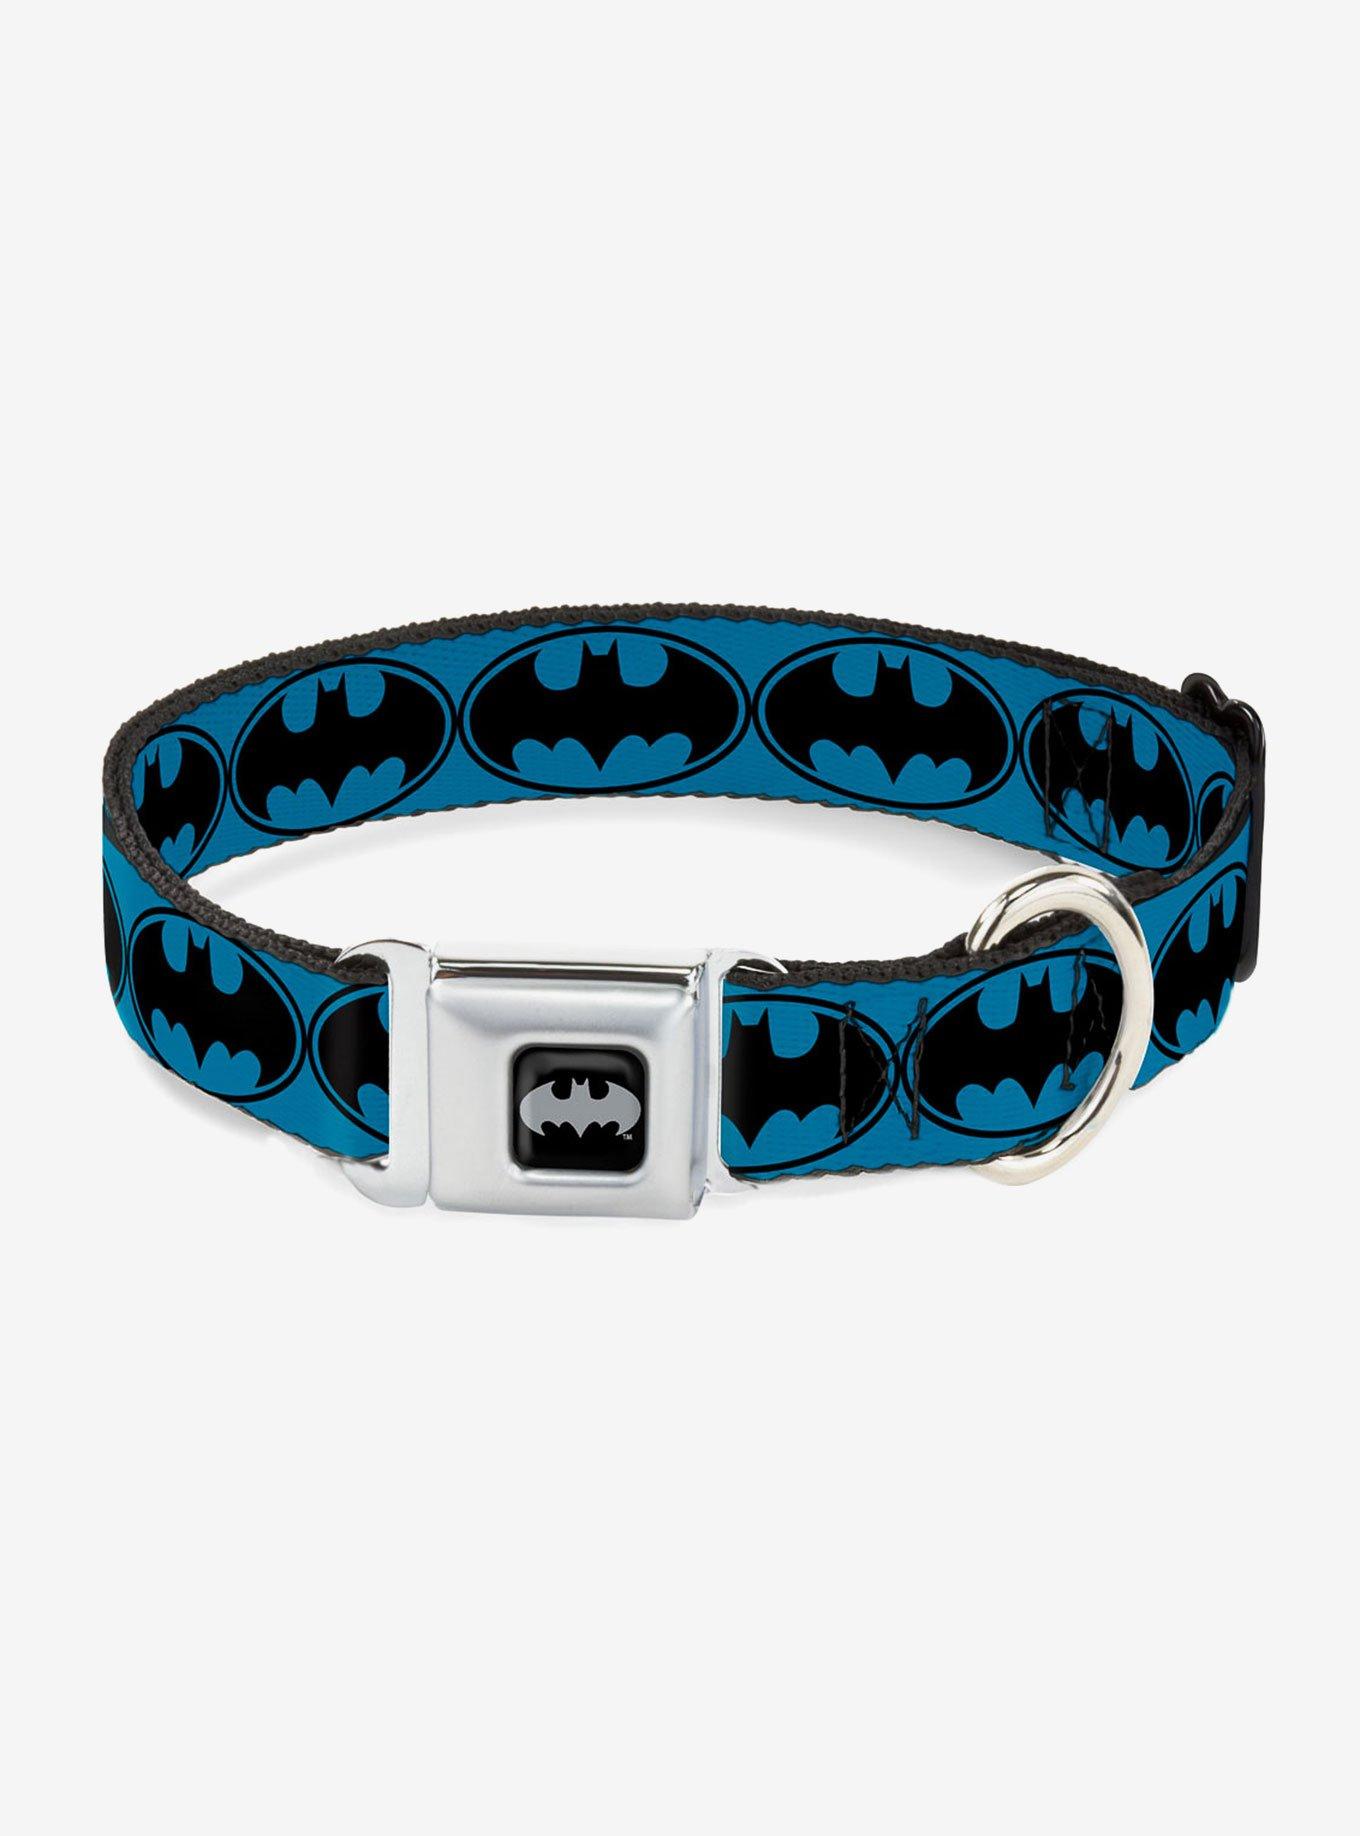 DC Comics Justice League Bat Signal 3 Seatbelt Buckle Pet Collar, , hi-res